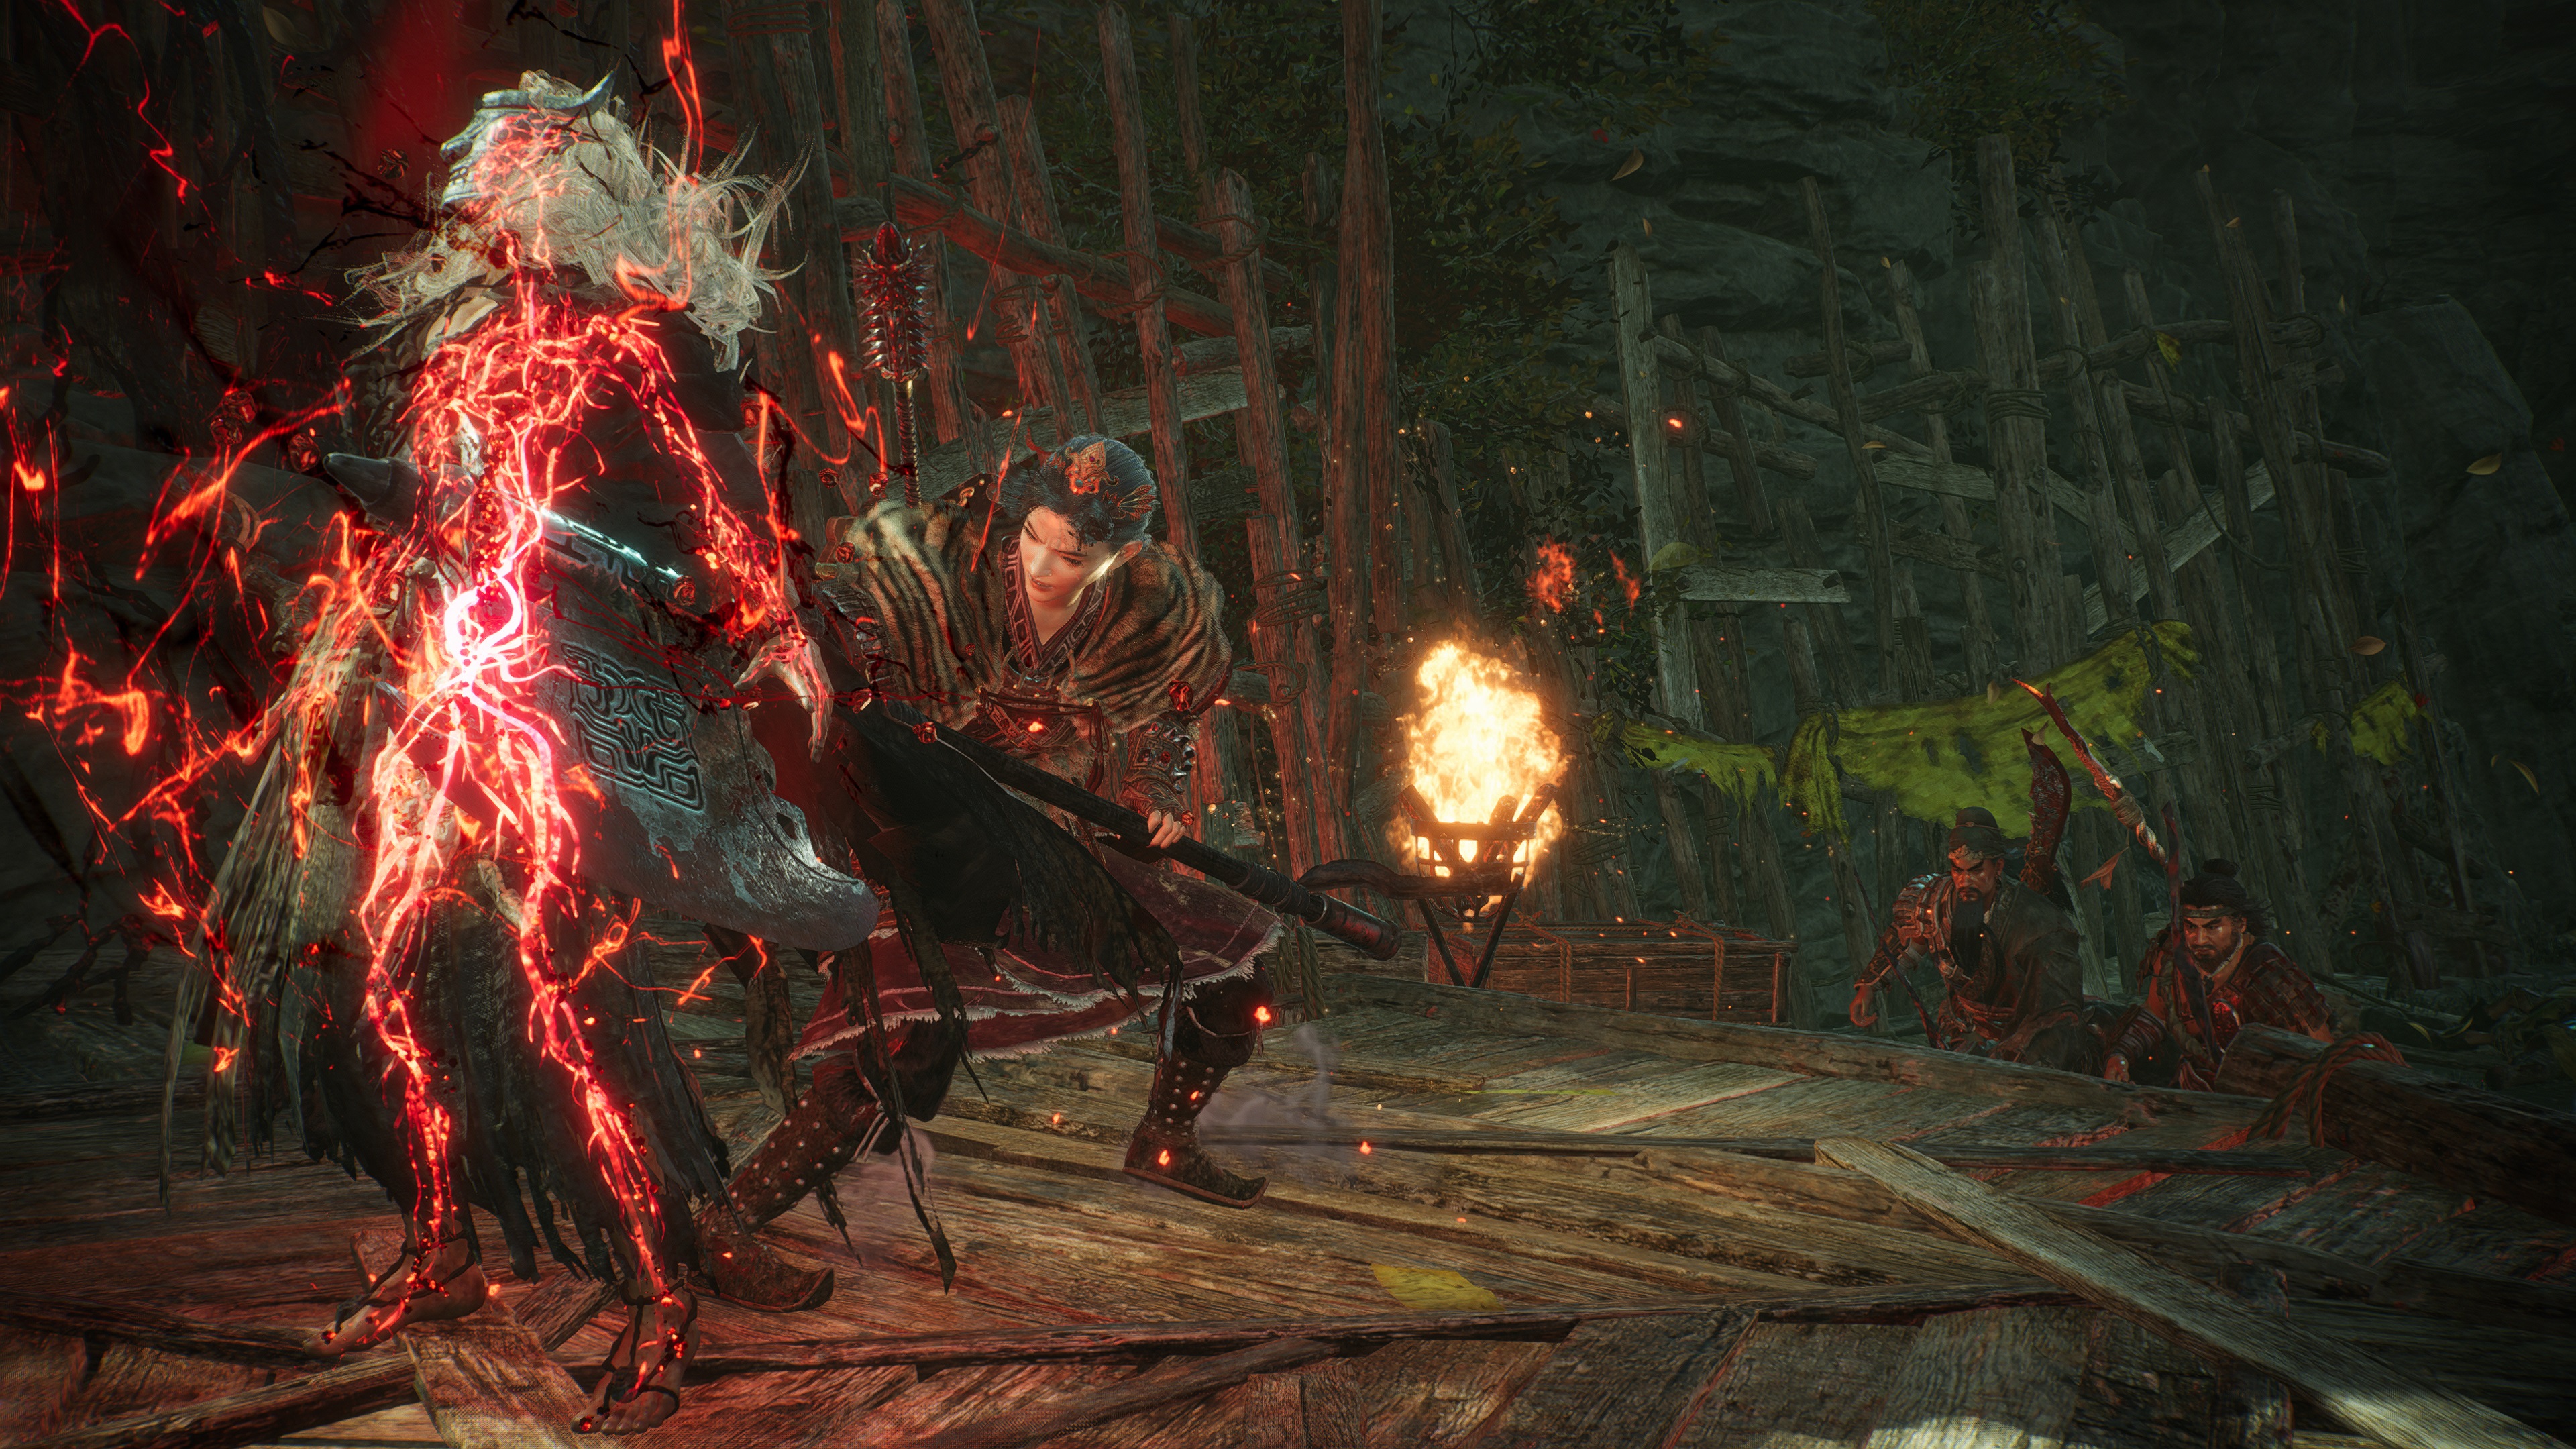 Внутриигровой скриншот Wo Long: Fallen Dynasty, на котором игрок выполняет Fatal Strike, а его союзники спешат на помощь.